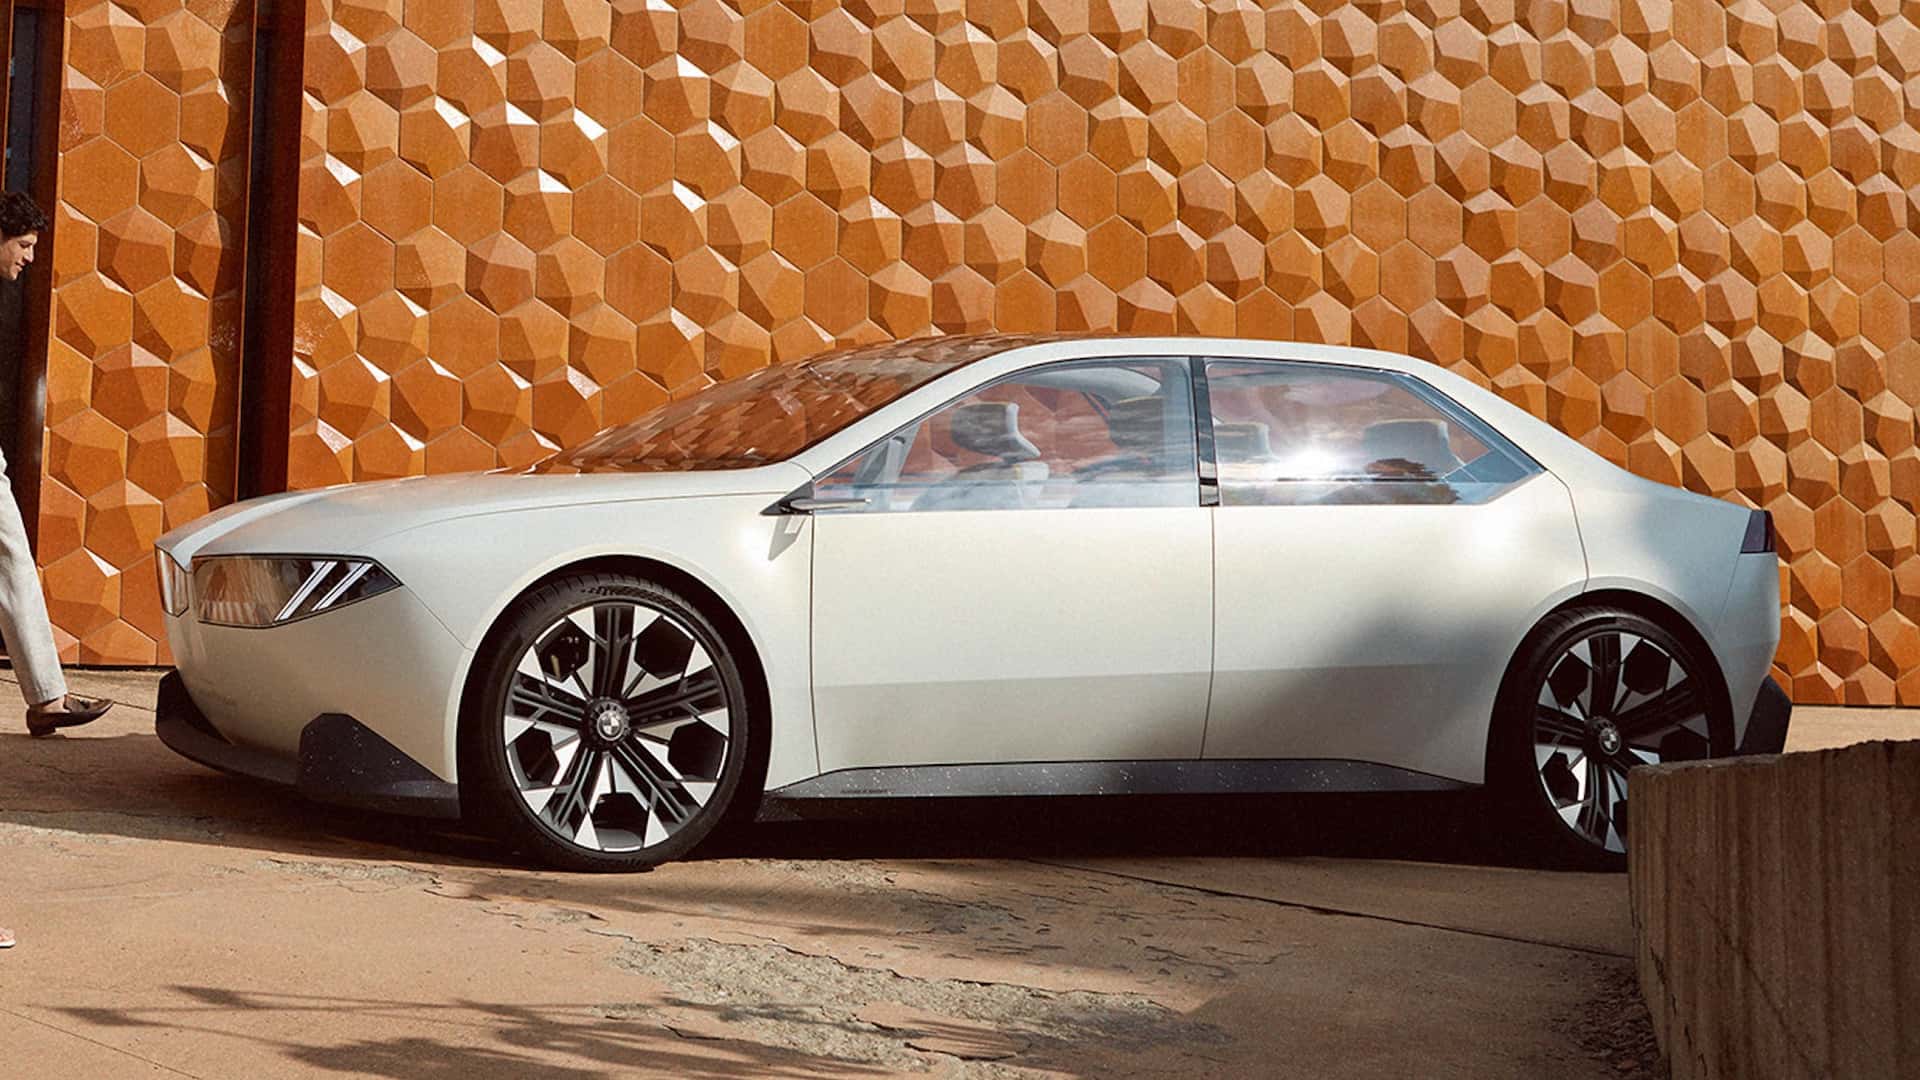 Takto majú vyzerať BMW budúcnosti, minimalistické a šokujúce